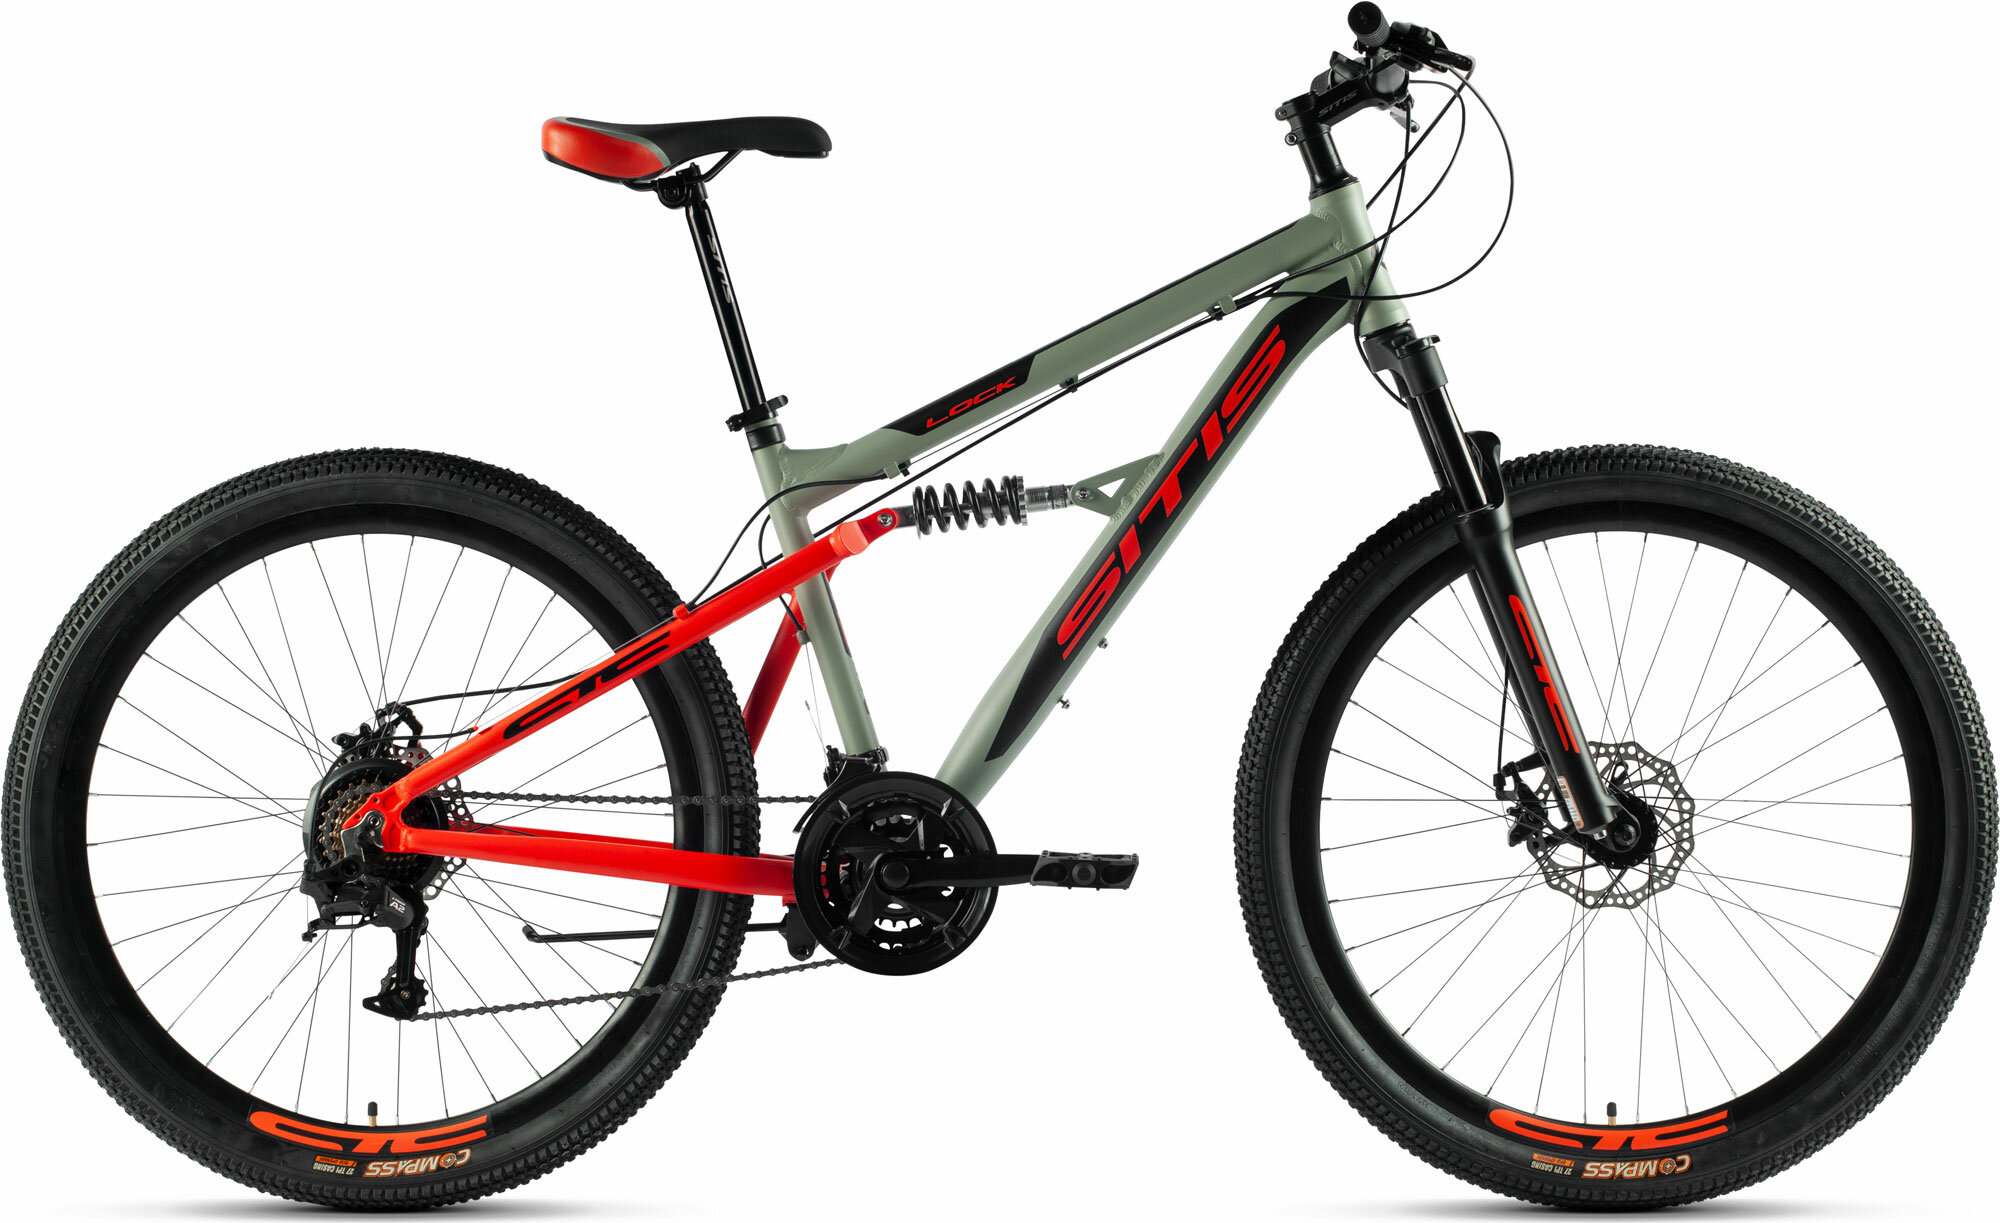 Велосипед горный SITIS LOCK 27.5" (2023), full-suspension, взрослый, мужской, алюминиевая рама, 21 скорость, дисковые механические тормоза, цвет Grey-Red-Black, серый/красный/черный цвет, размер рамы 17", для роста 170-180 см